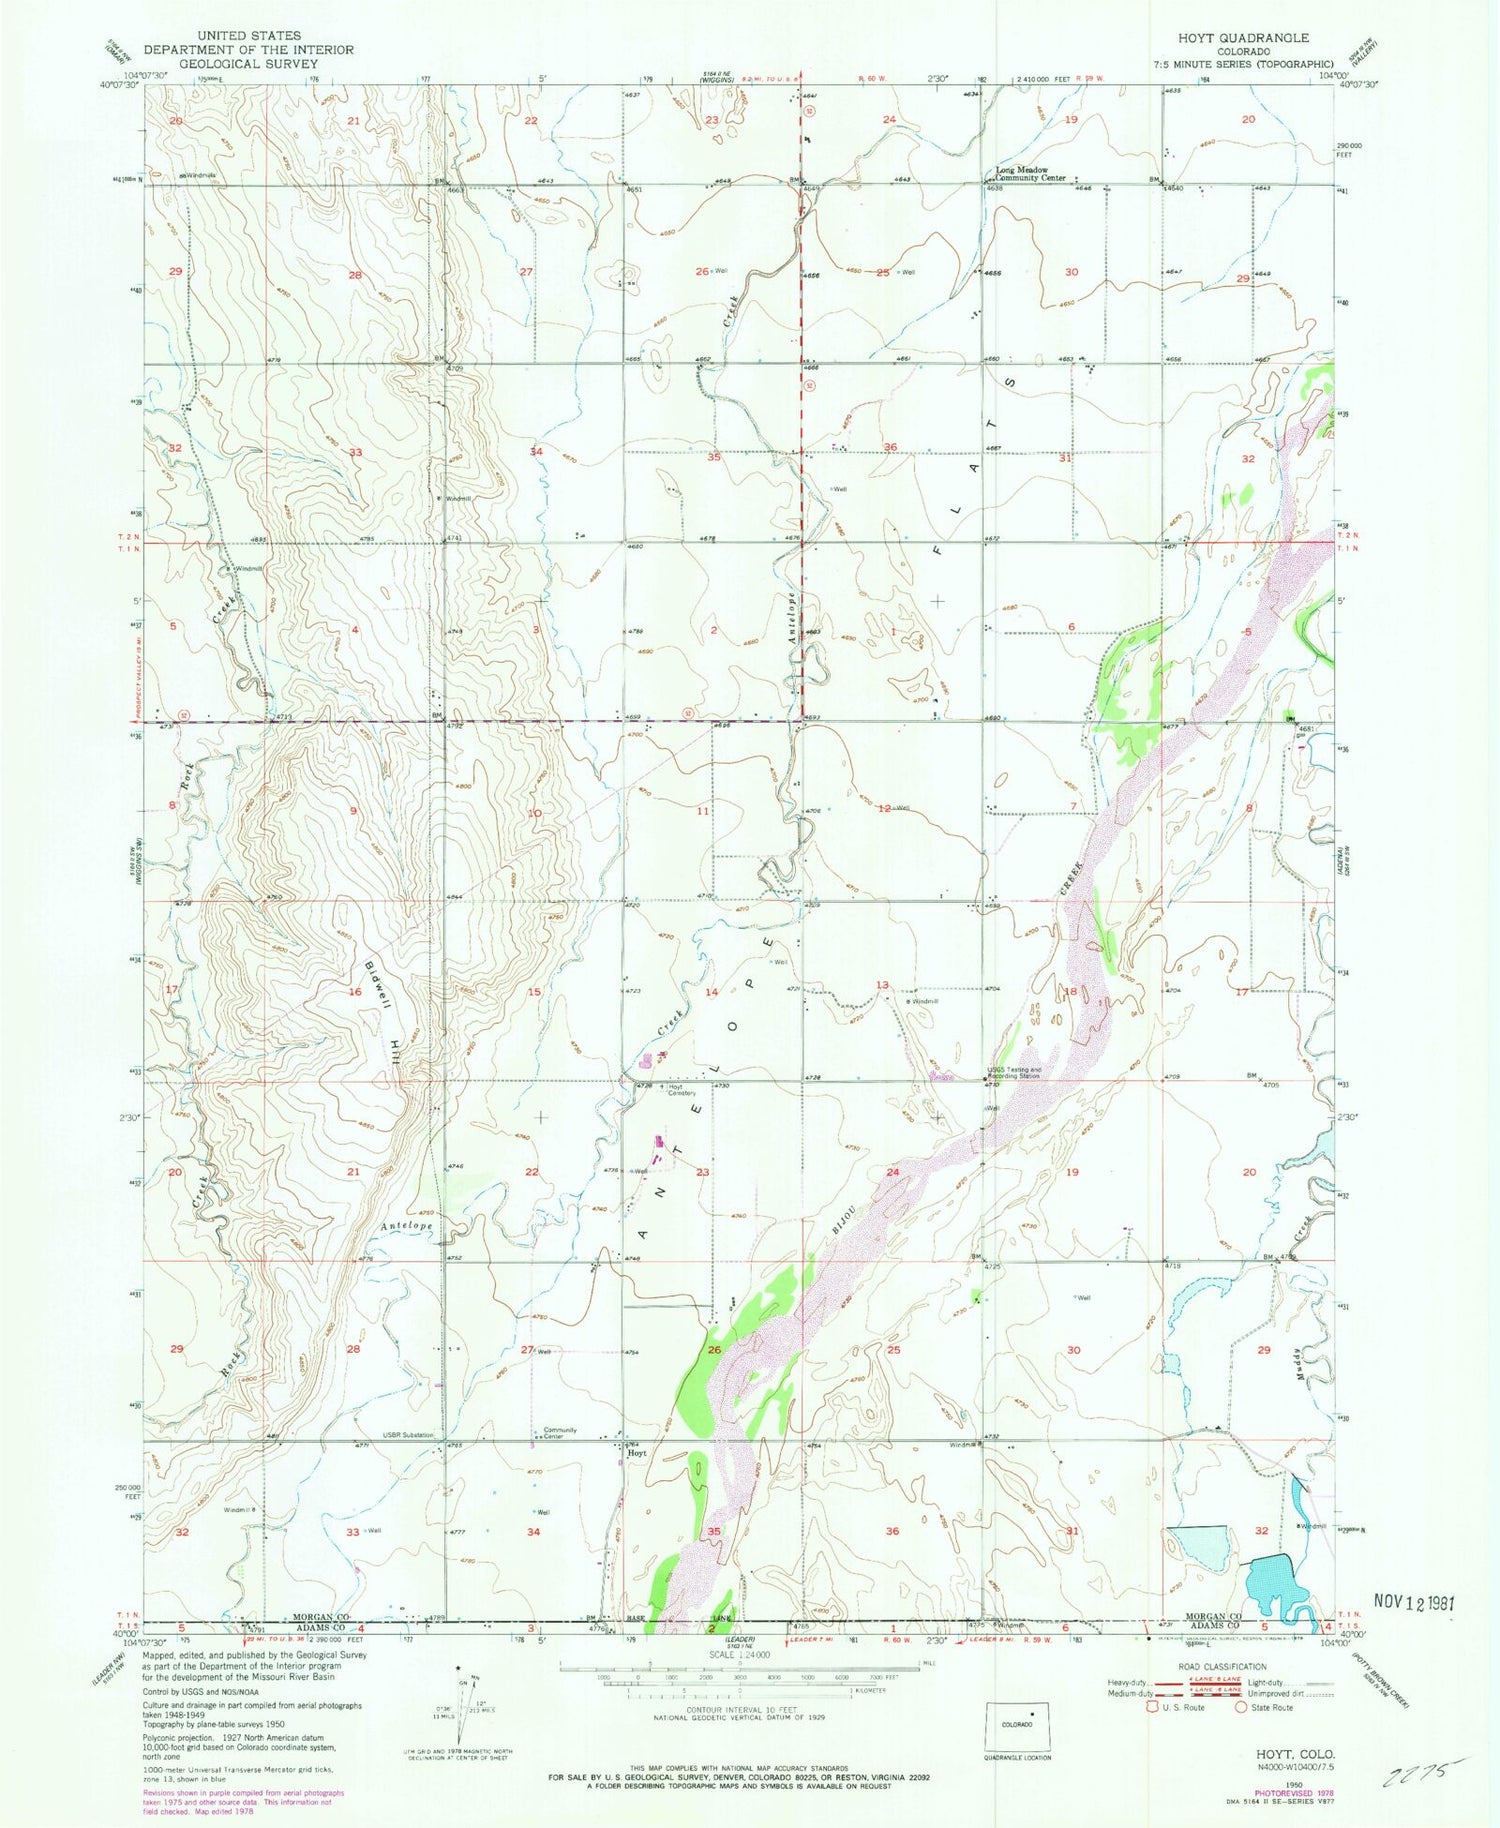 Classic USGS Hoyt Colorado 7.5'x7.5' Topo Map Image